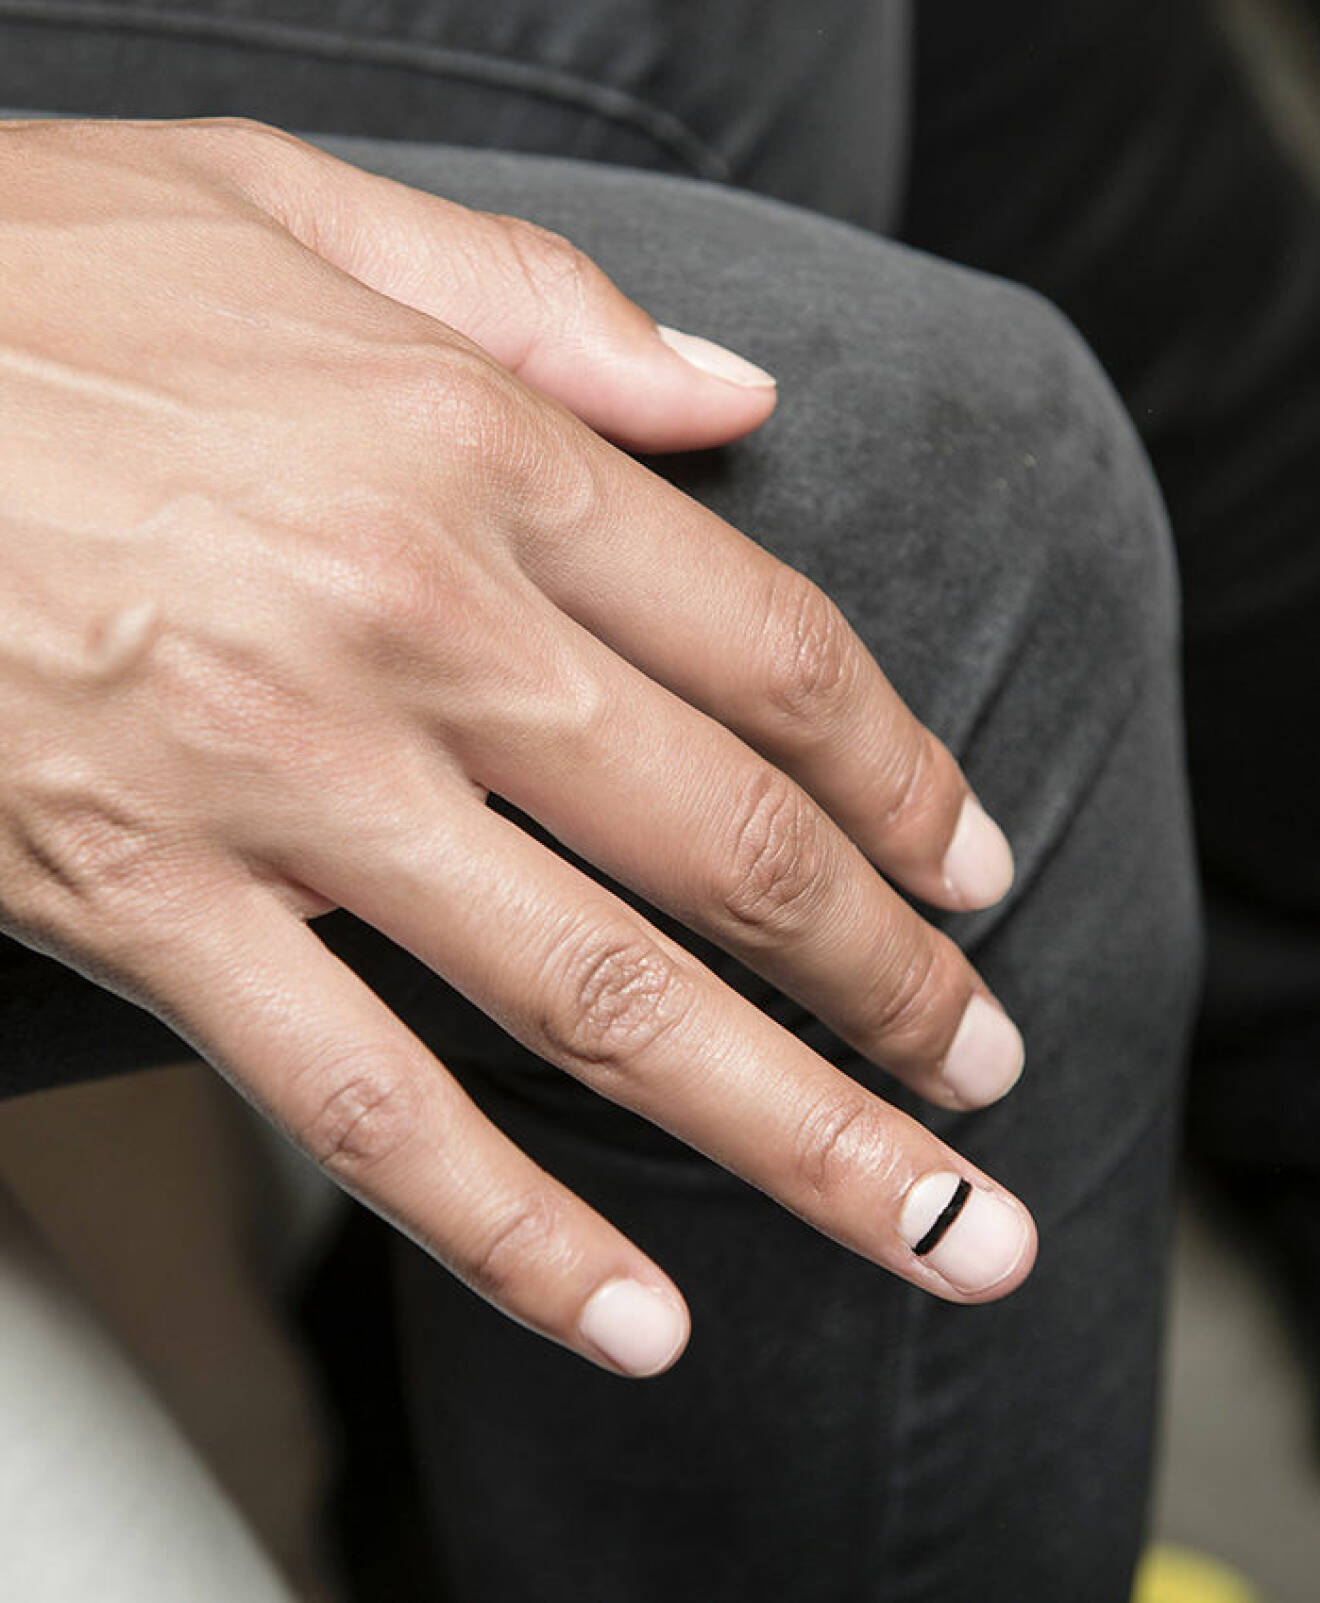 Vita naglar, en av de lackade med ett svart streck tvärsöver nageln